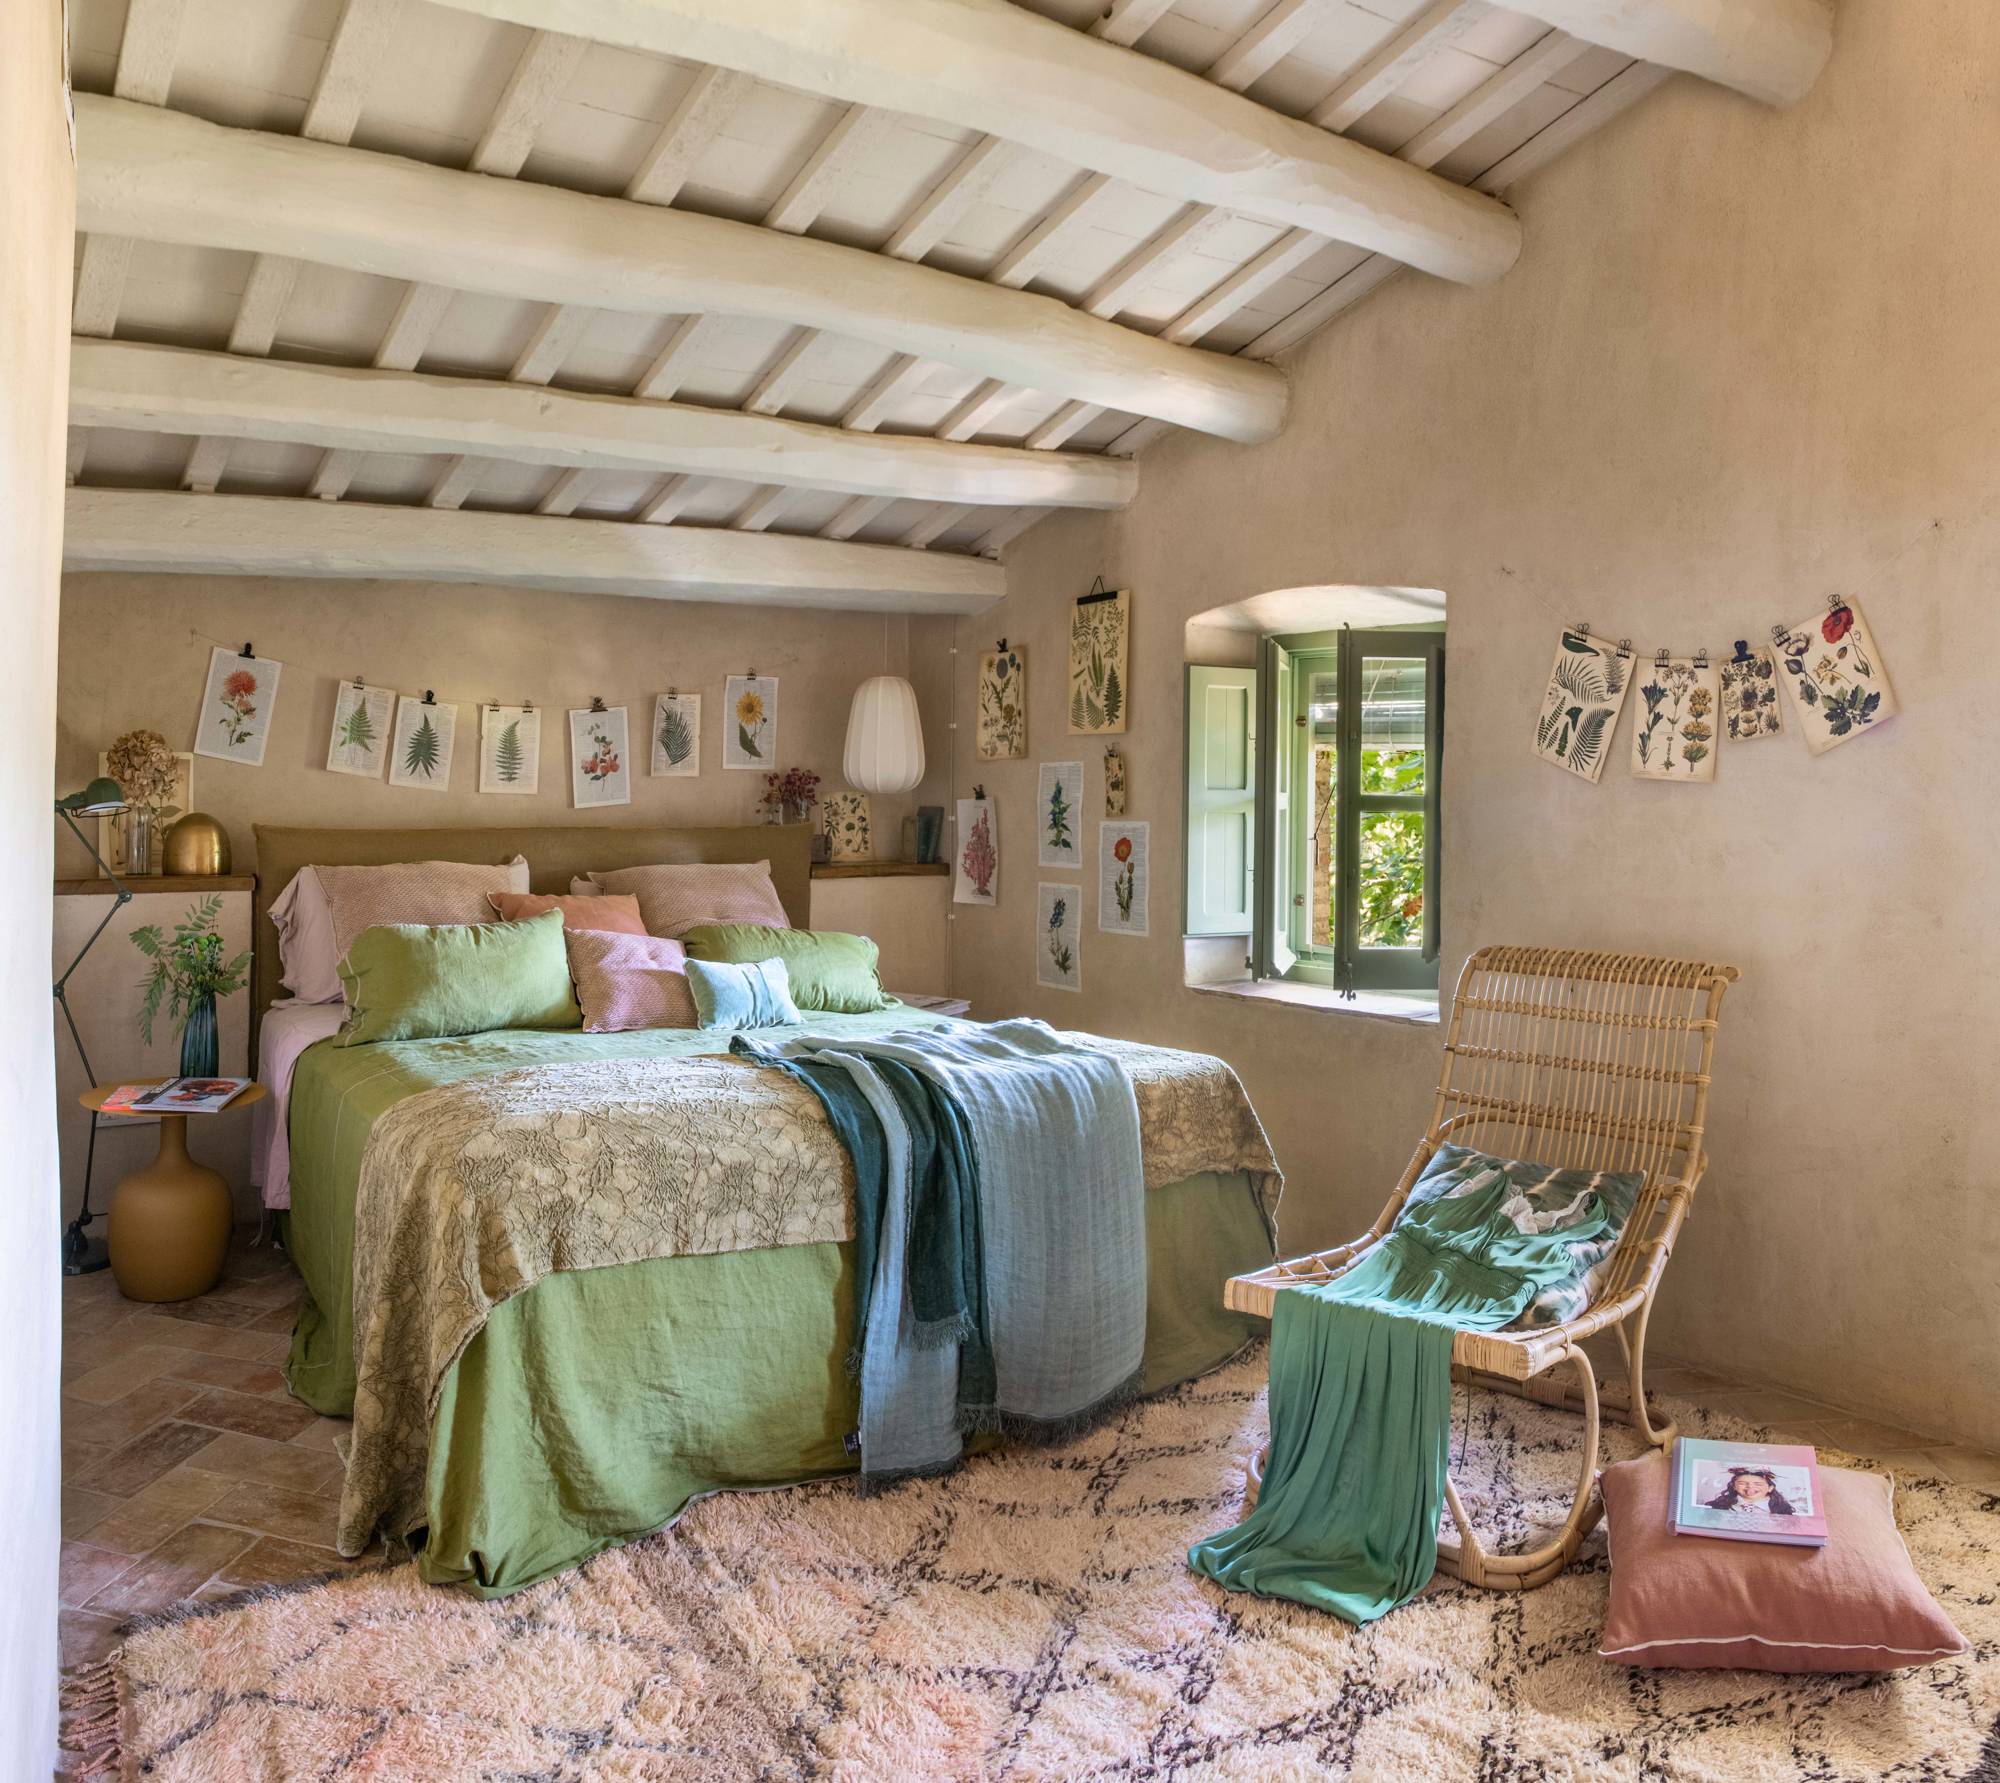 Dormitorio abuhardillado con paredes en tono arena decoradas con láminas botánicas.